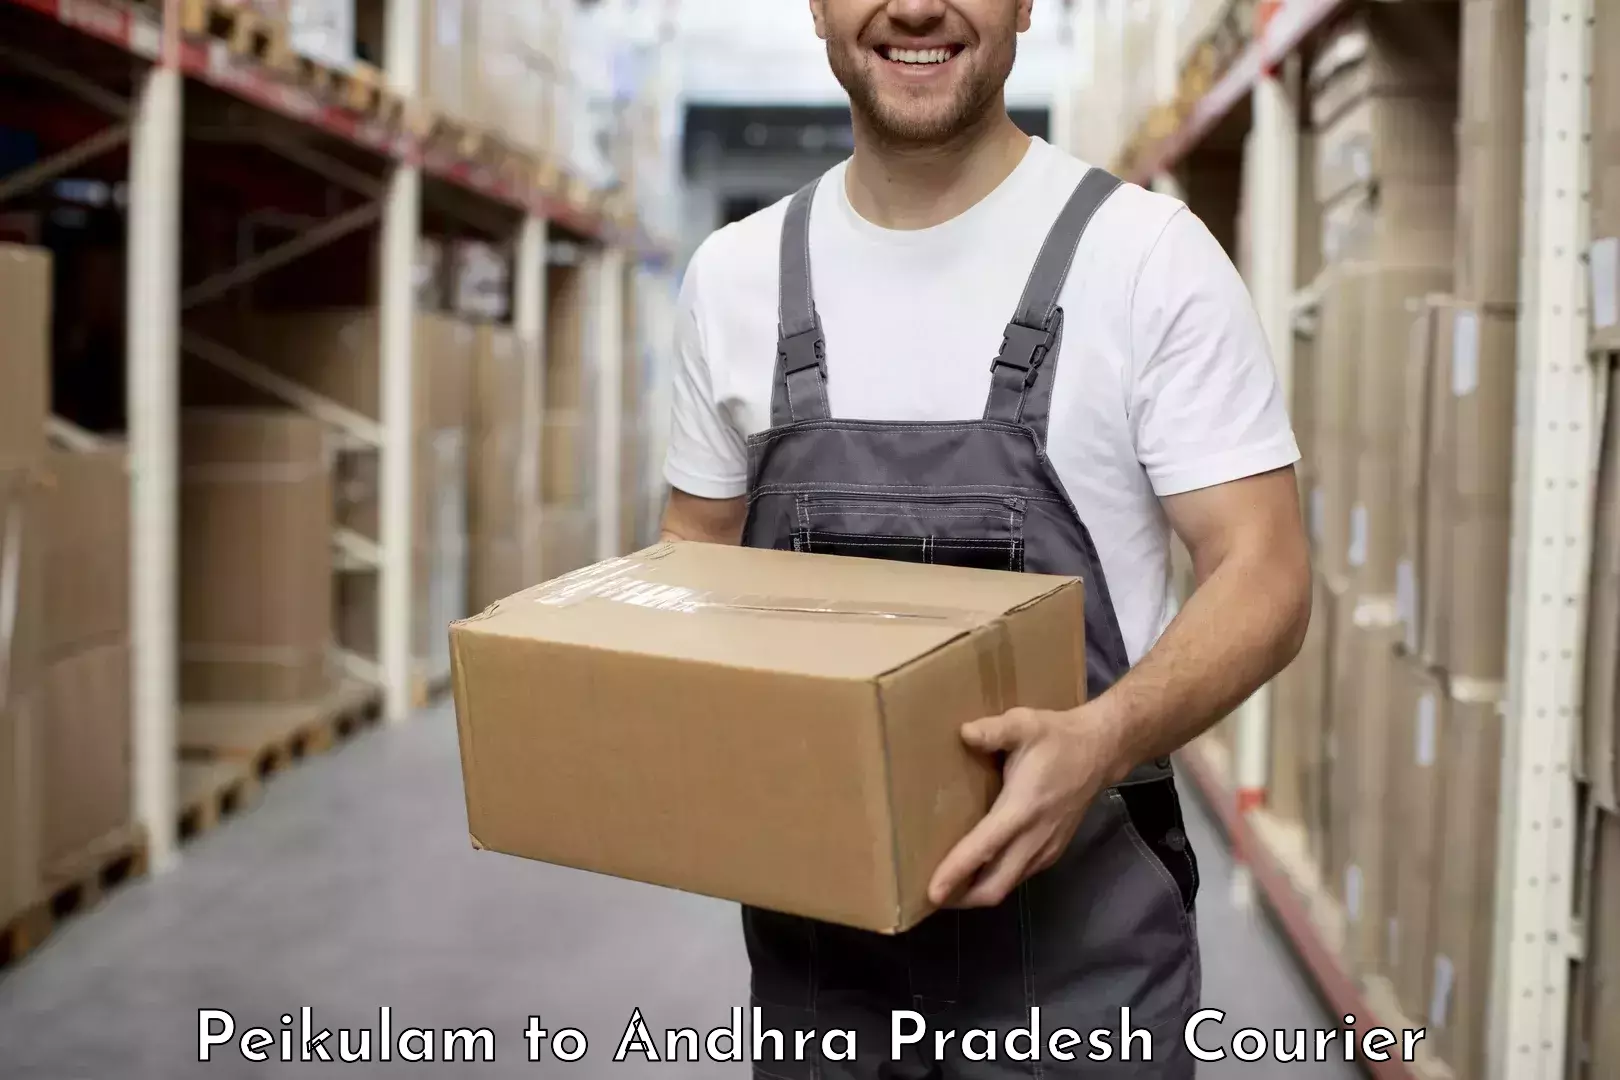 Specialized shipment handling Peikulam to Malikipuram